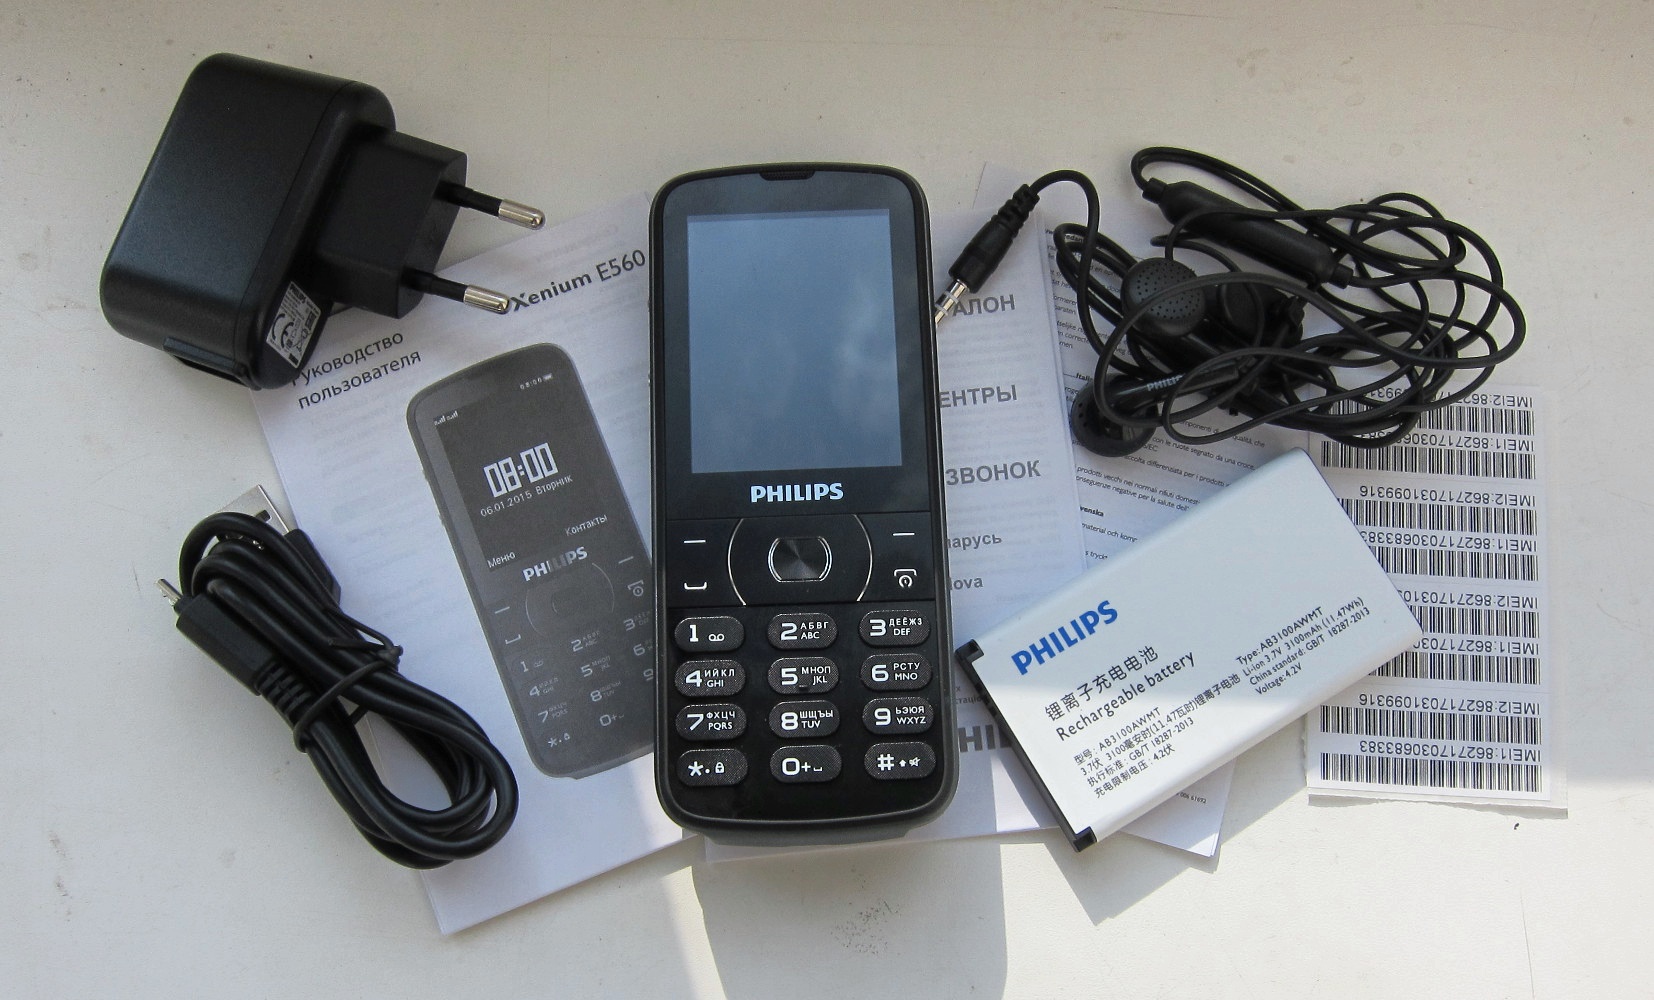 Филипс е 185. Philips Xenium e560. Мобильный телефон Philips Philips Xenium e560. Philips Xenium е 560. Филипс ксениум кнопочный е560.